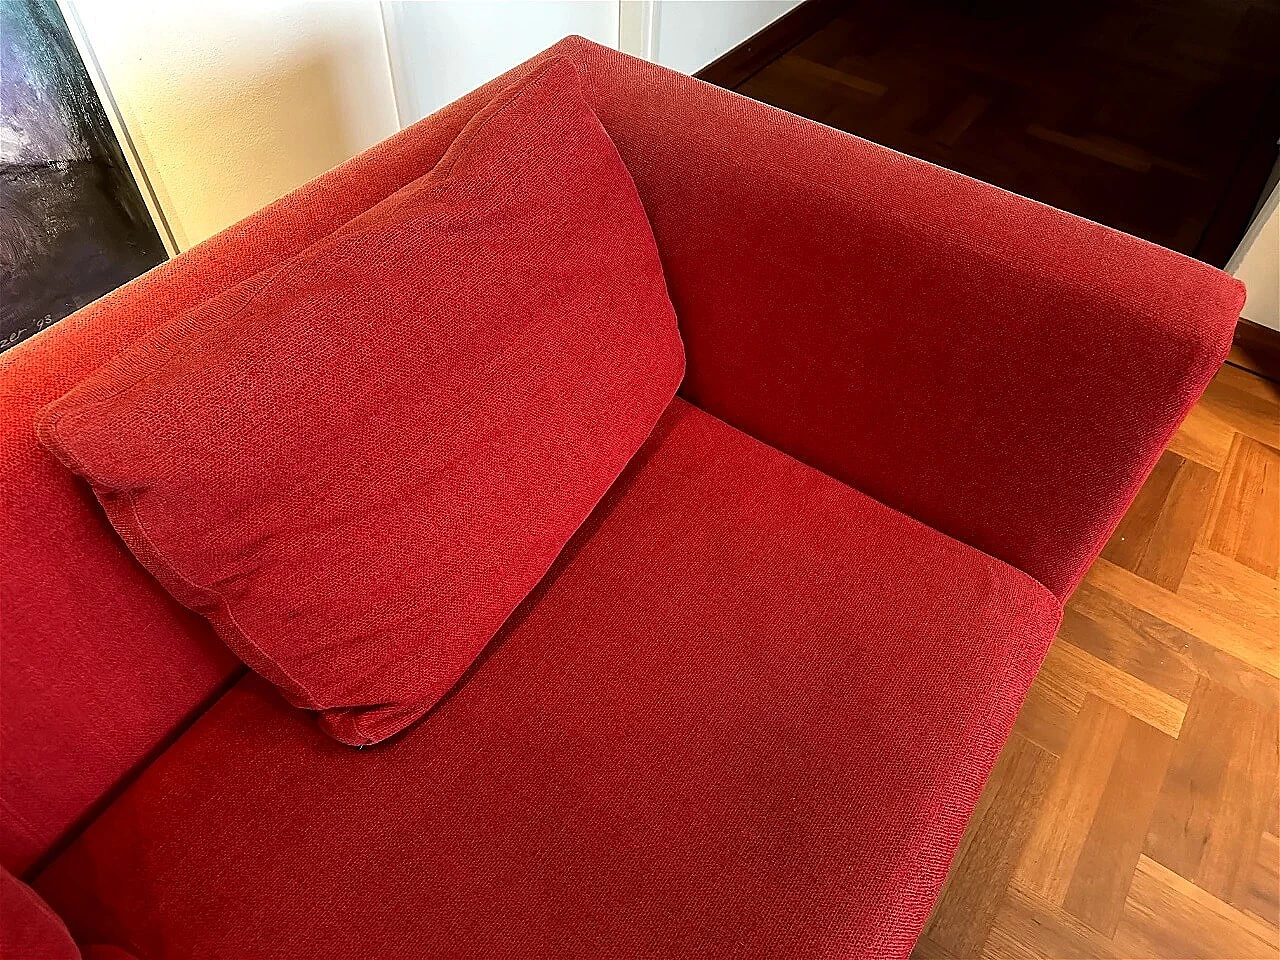 CH228 Charles sofa in red Maxalto-Cat cotton by Antonio Citterio for B&B Italia 20